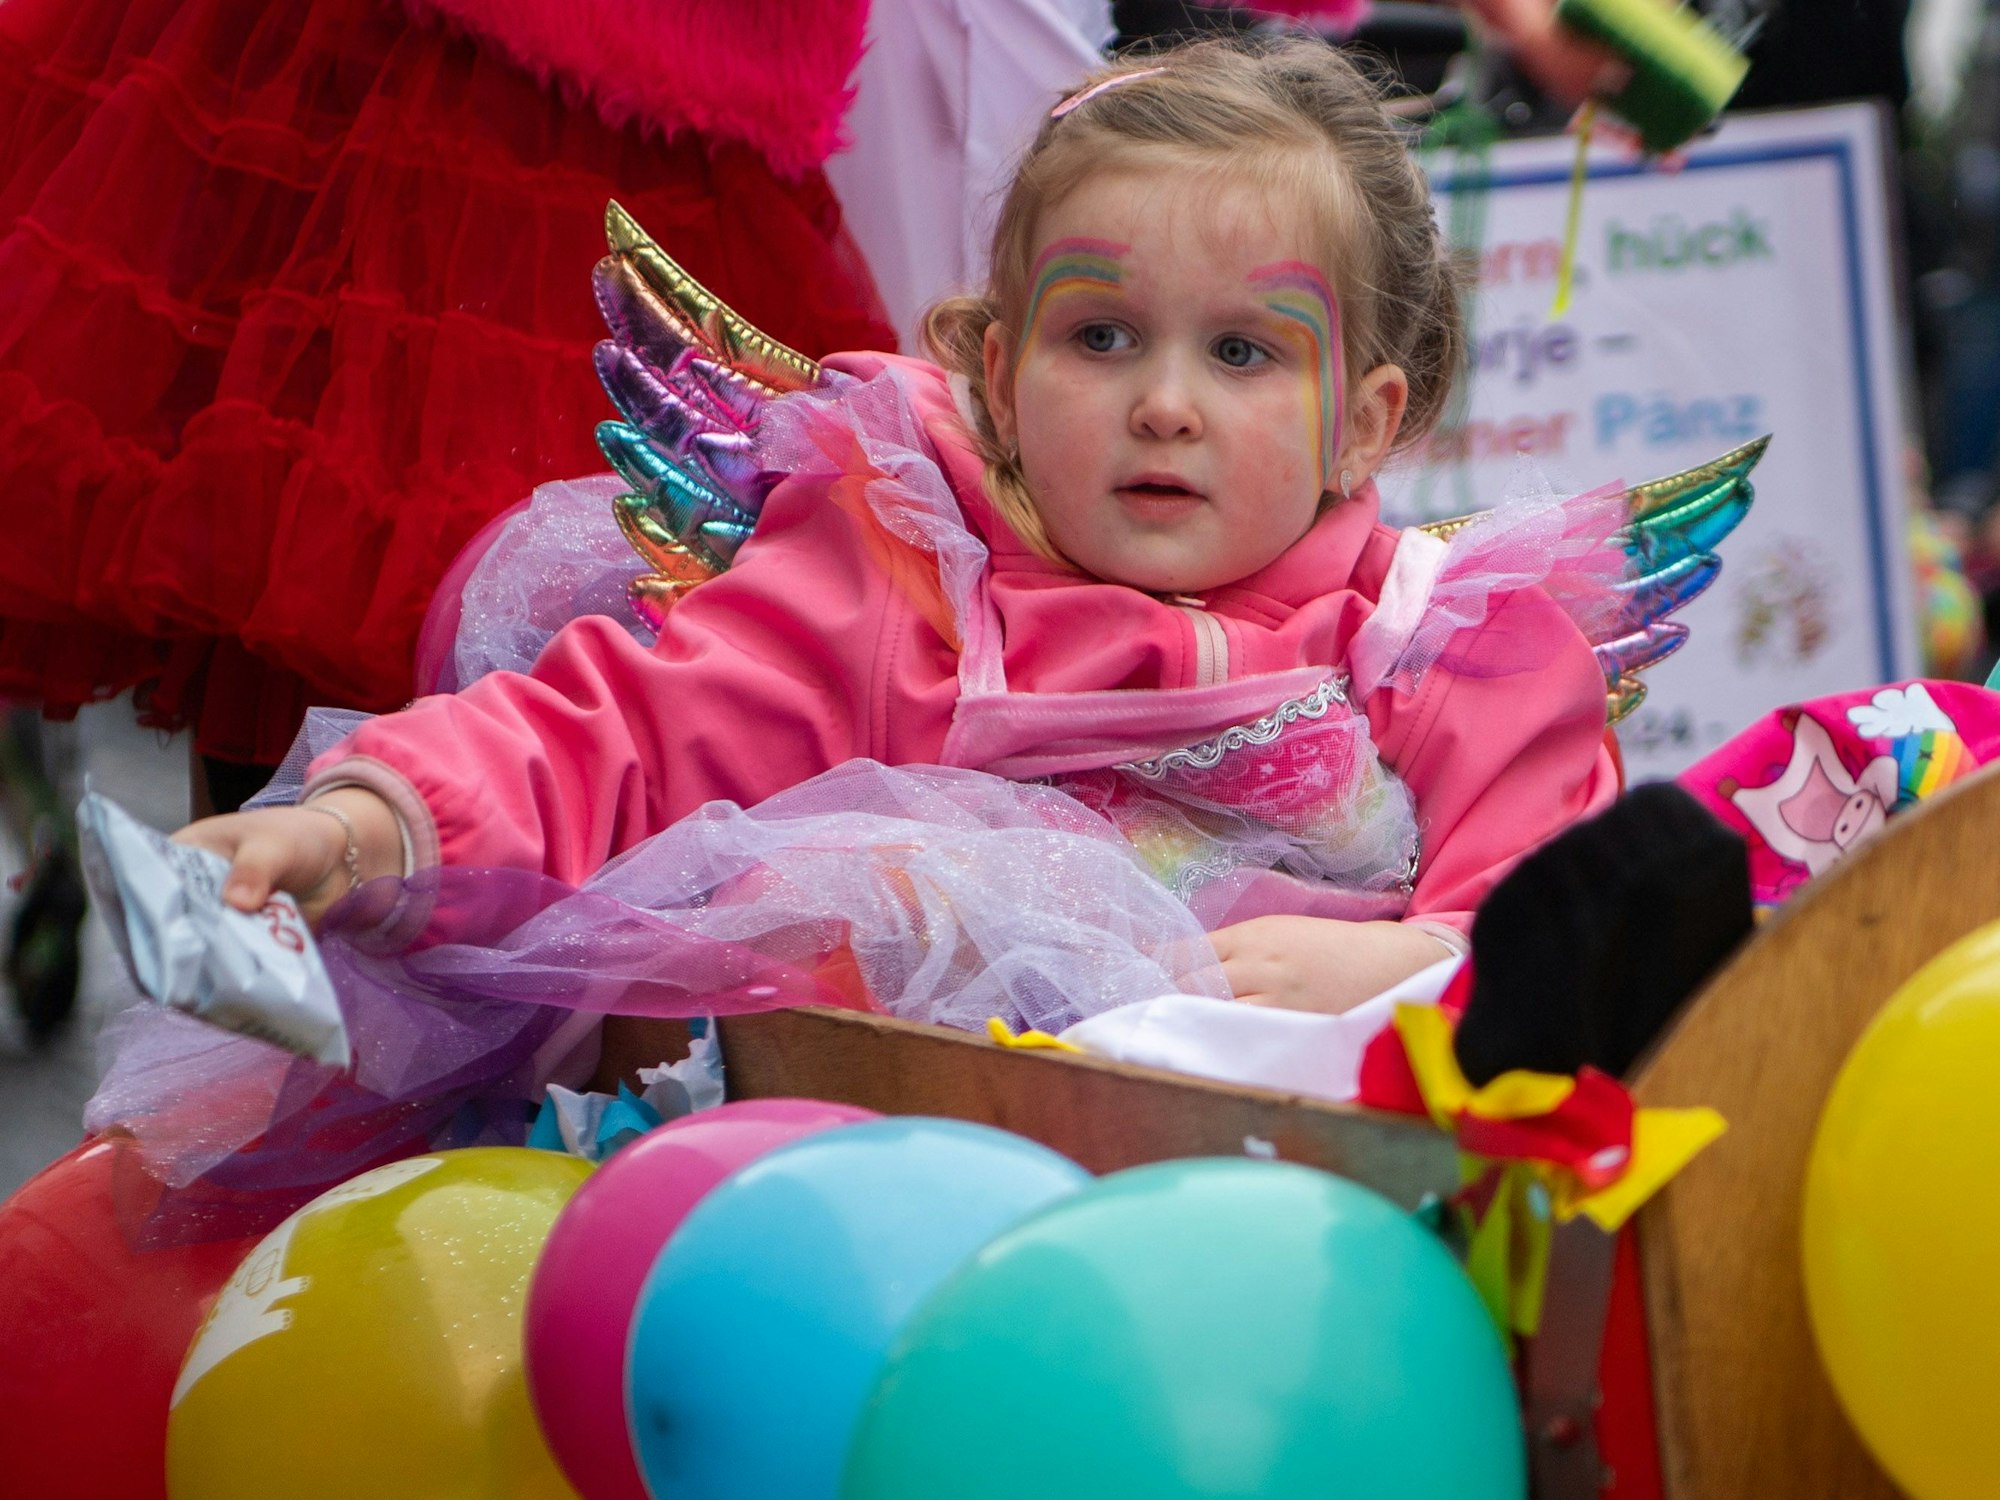 Das Bild zeigt ein Mädchen, das als Regenbogen kostümiert ist. Es sitzt in einem mit bunten Luftballons geschmückten Bollerwagen.